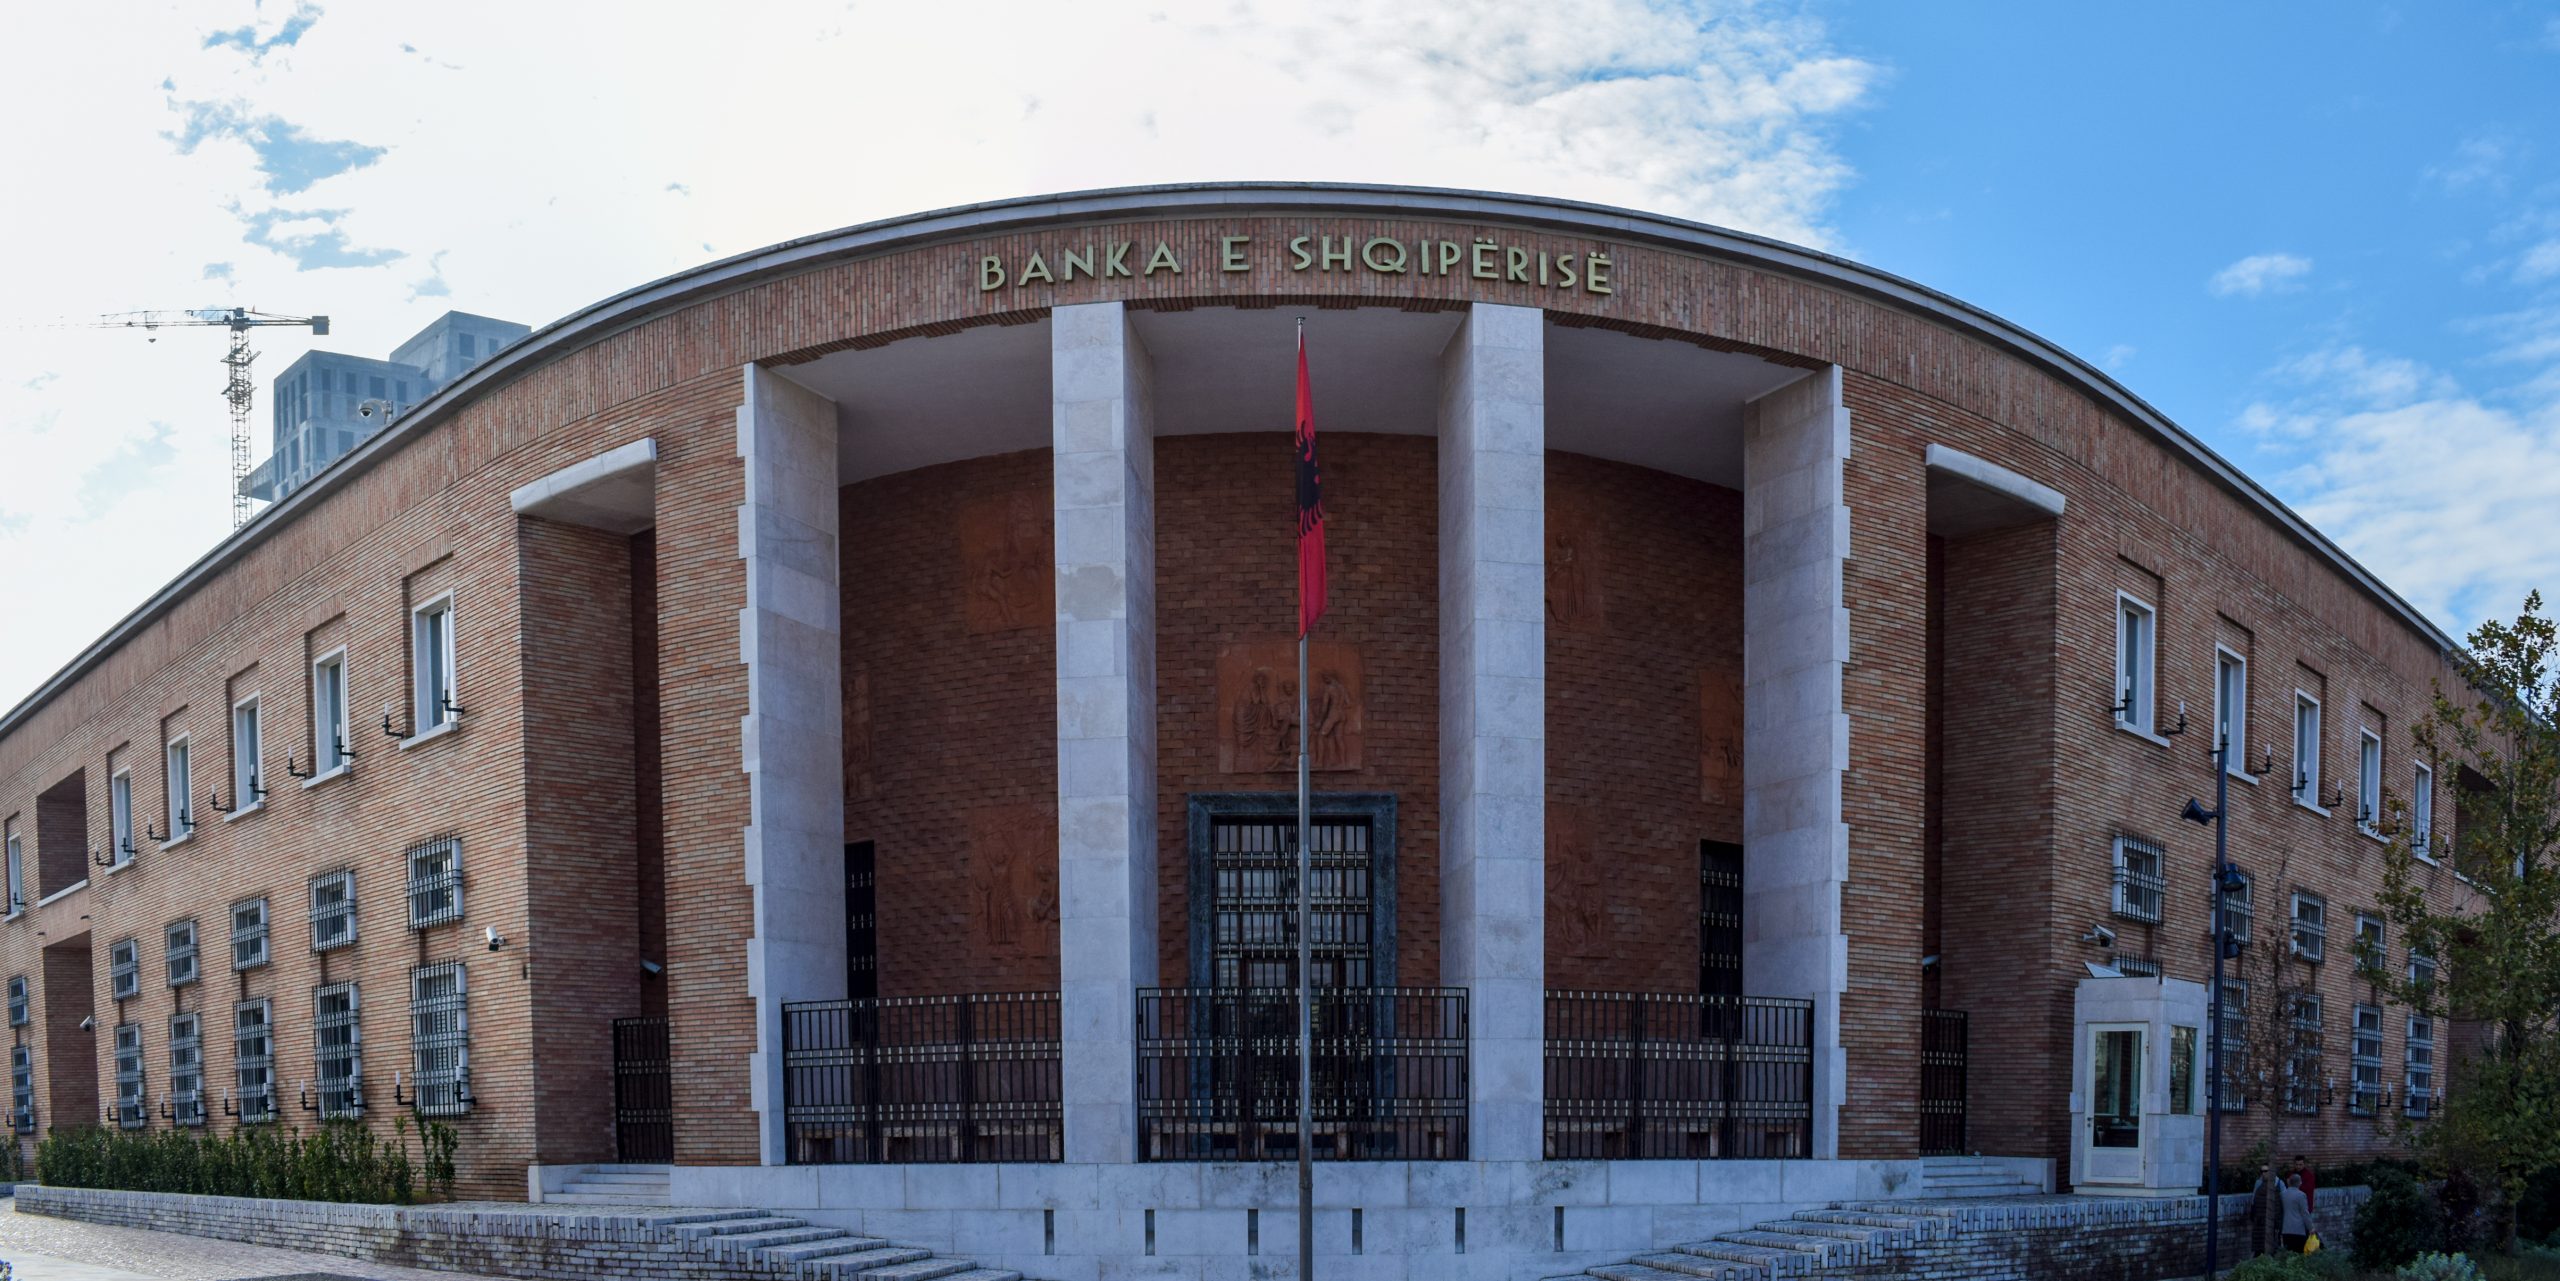 Banka e Shqipërisë: Kreditë bankare mund të shtyhen edhe me 3 muaj të tjerë